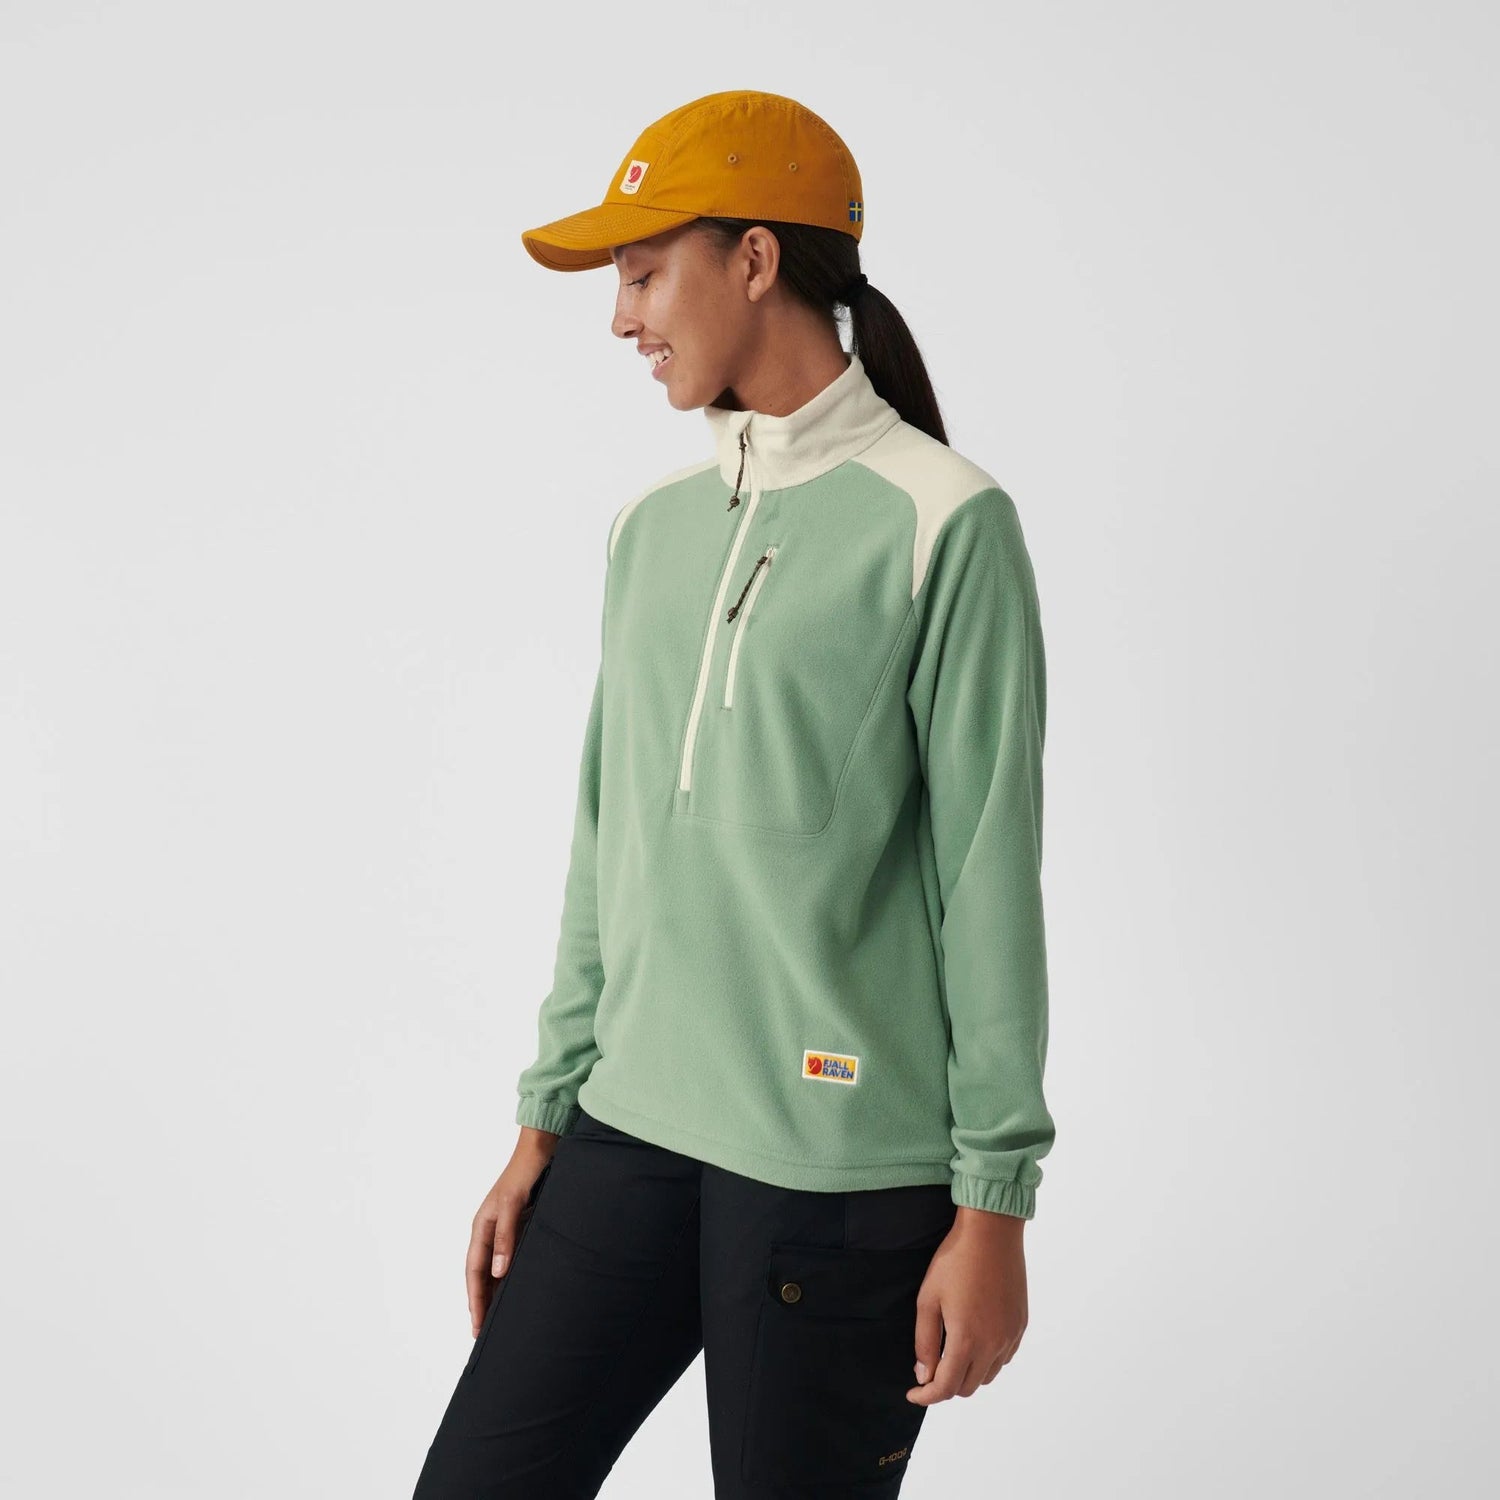 Fjällräven - W's Vardag Lite Fleece - Recycled polyester - Weekendbee - sustainable sportswear